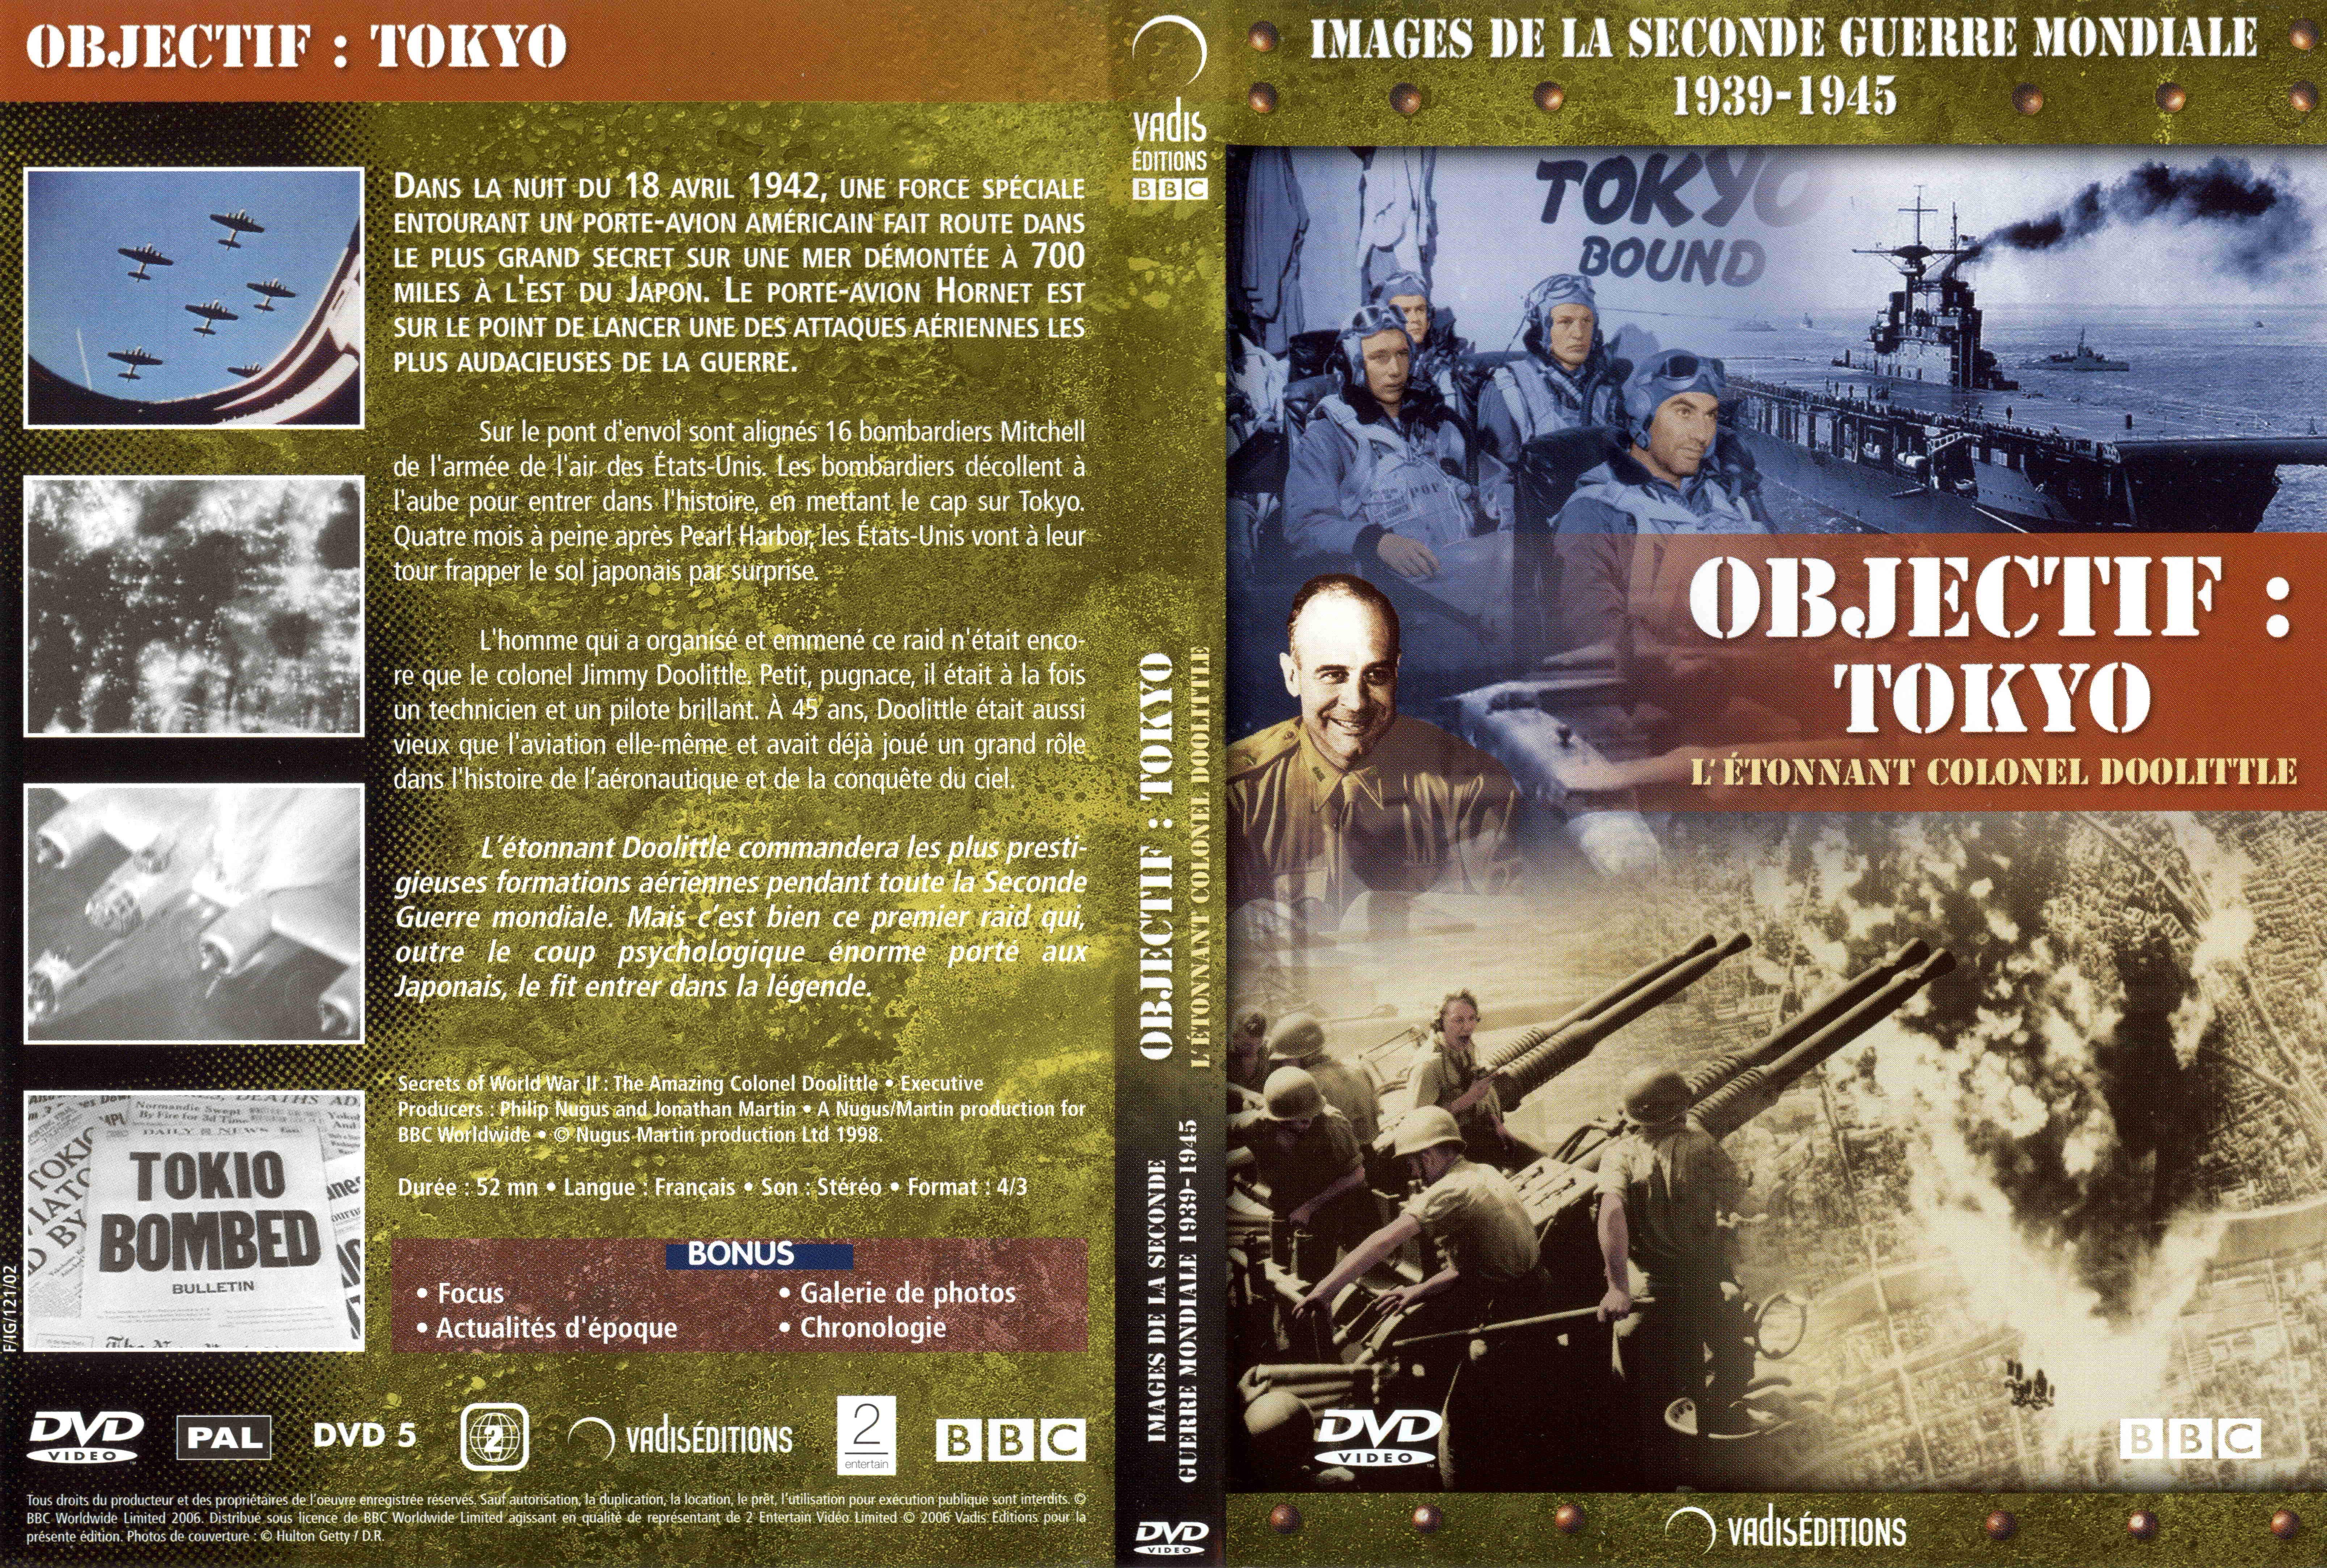 Jaquette DVD Images de la seconde guerre mondiale - Objectif Tokyo